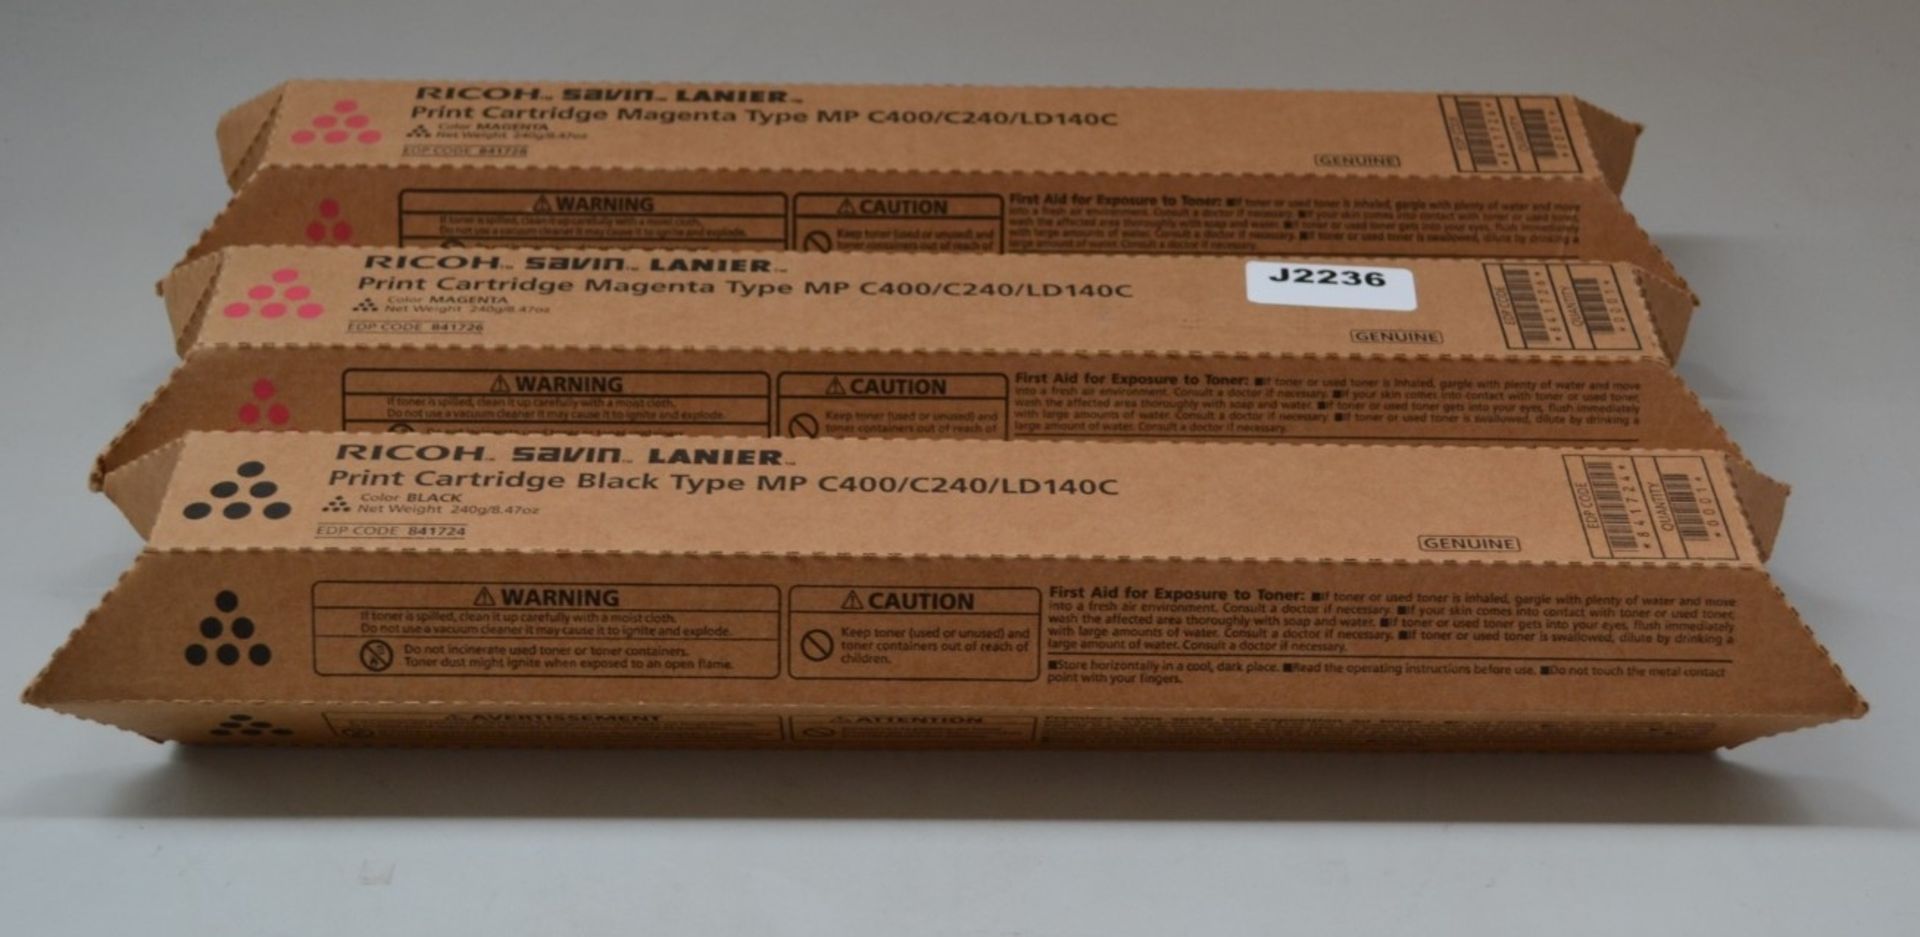 3 x Ricoh Savin Lanier Printer Toner Cartridges - Ref J2236